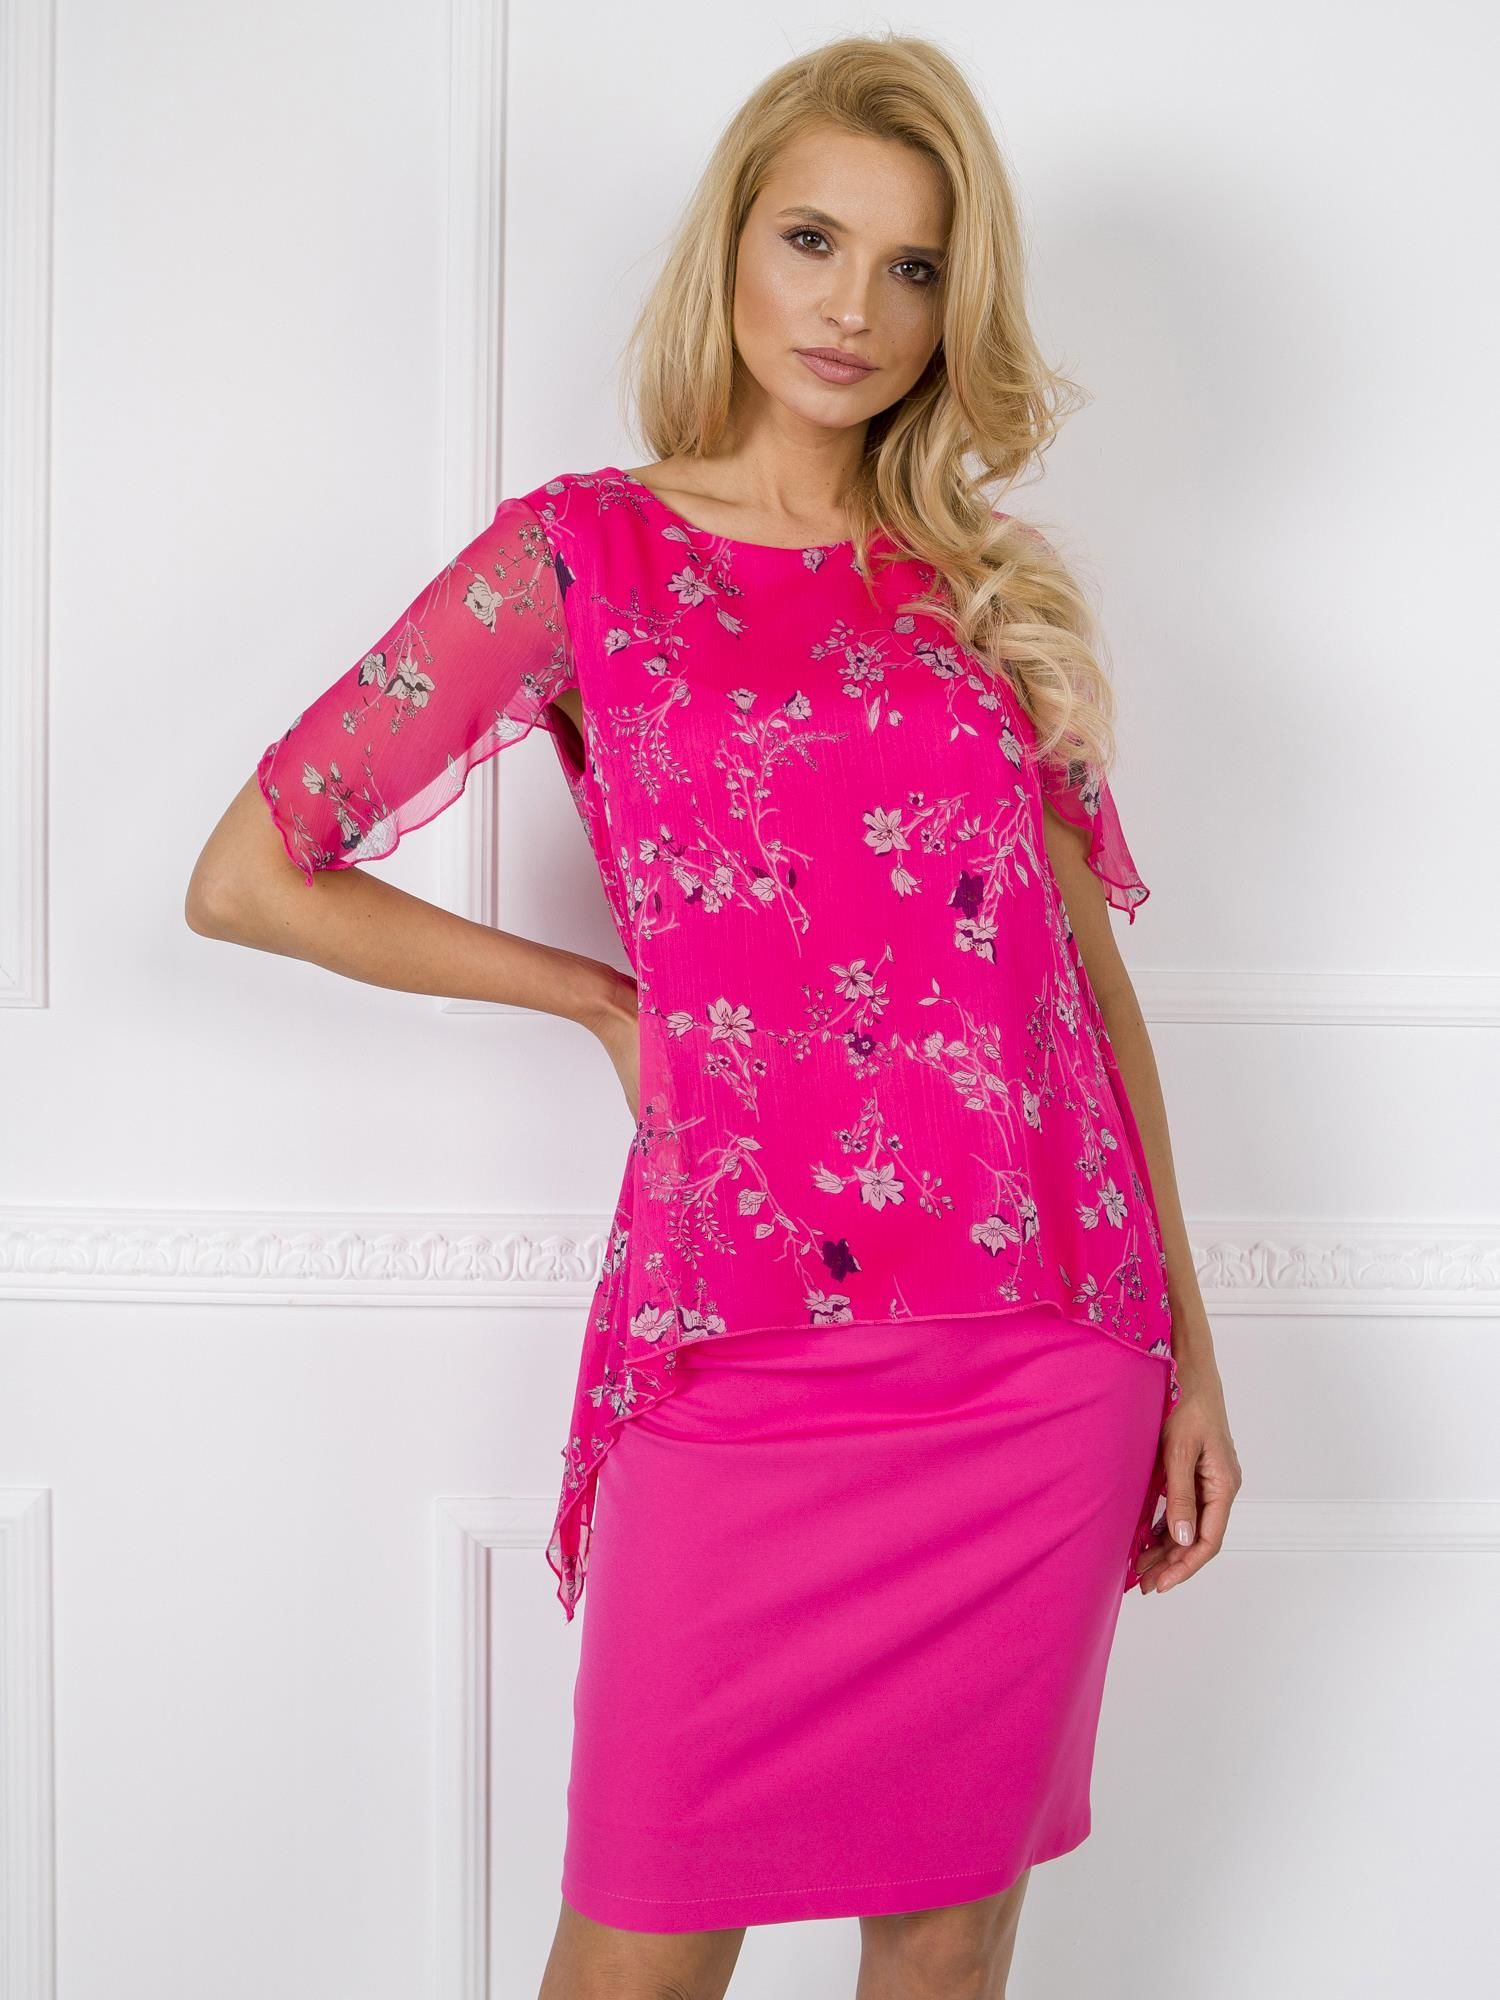 Dámské růžové šaty s květinami NU-SK-1338.04-dark pink Velikost: 38